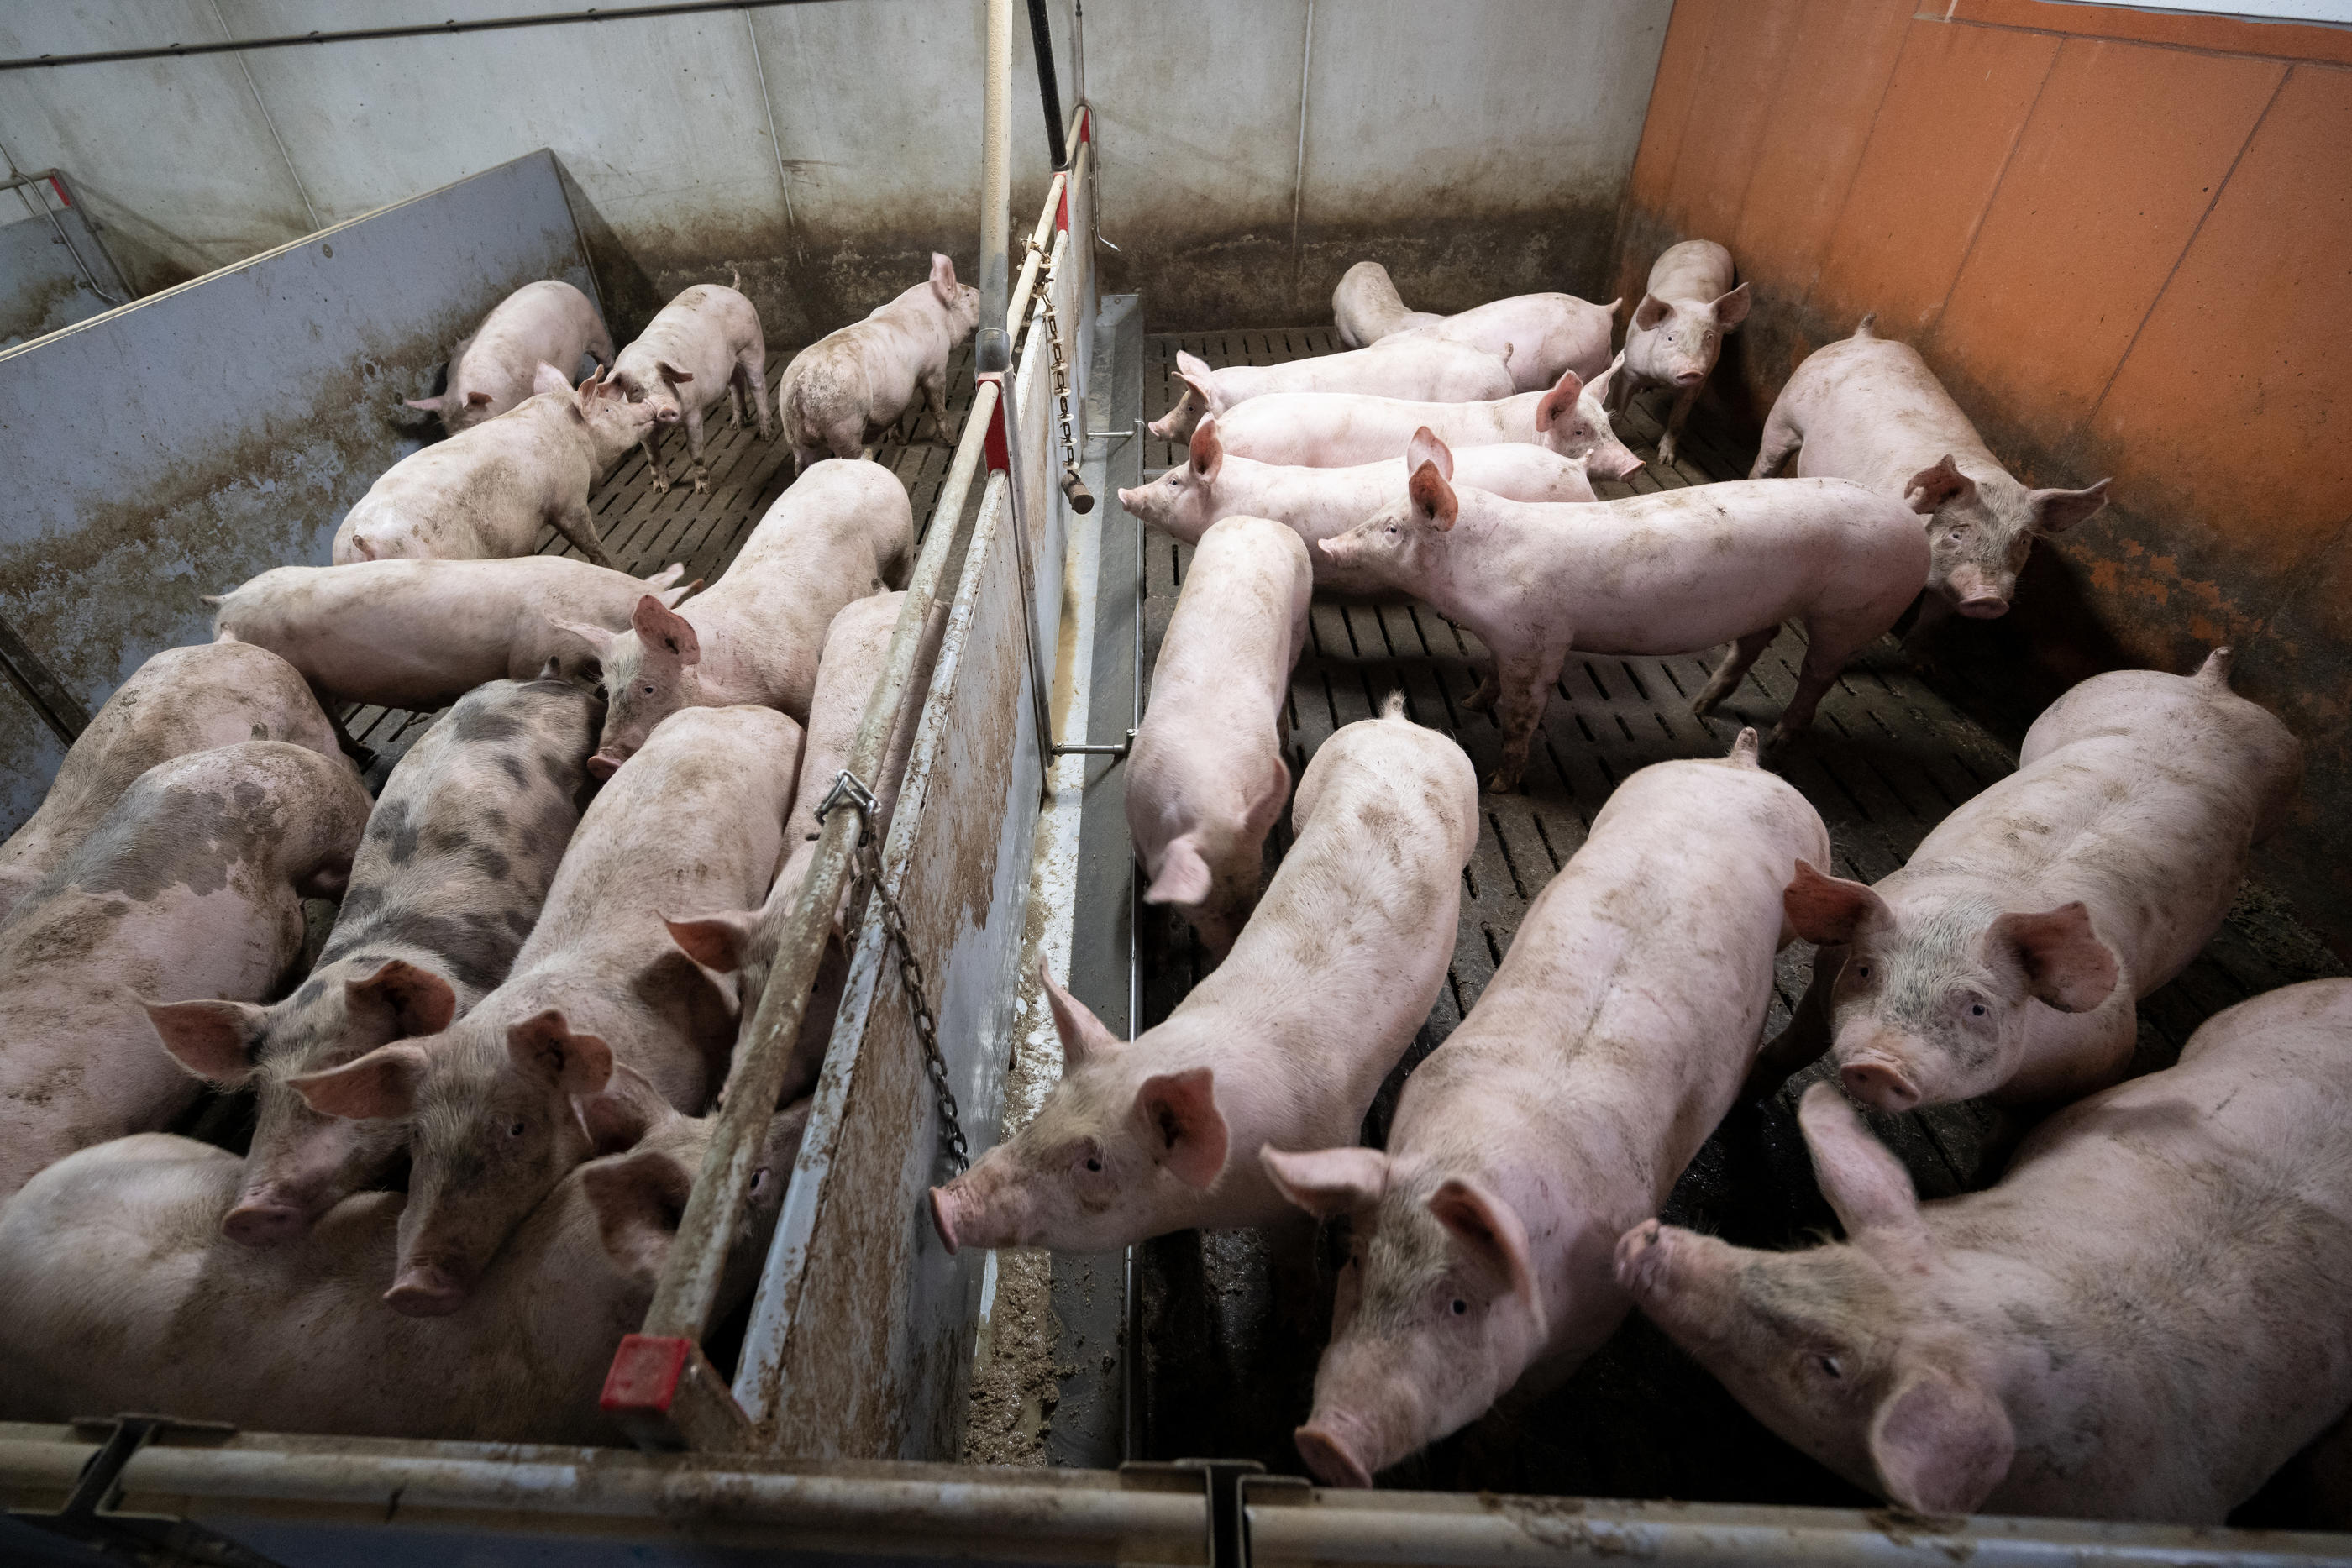 En France, 95 % des élevages intensifs coupent la queue des cochons pour éviter qu'ils se mordillent entre eux, alors qu'une directive européenne de 1991 l'interdit. AFP/Bertrand Guay